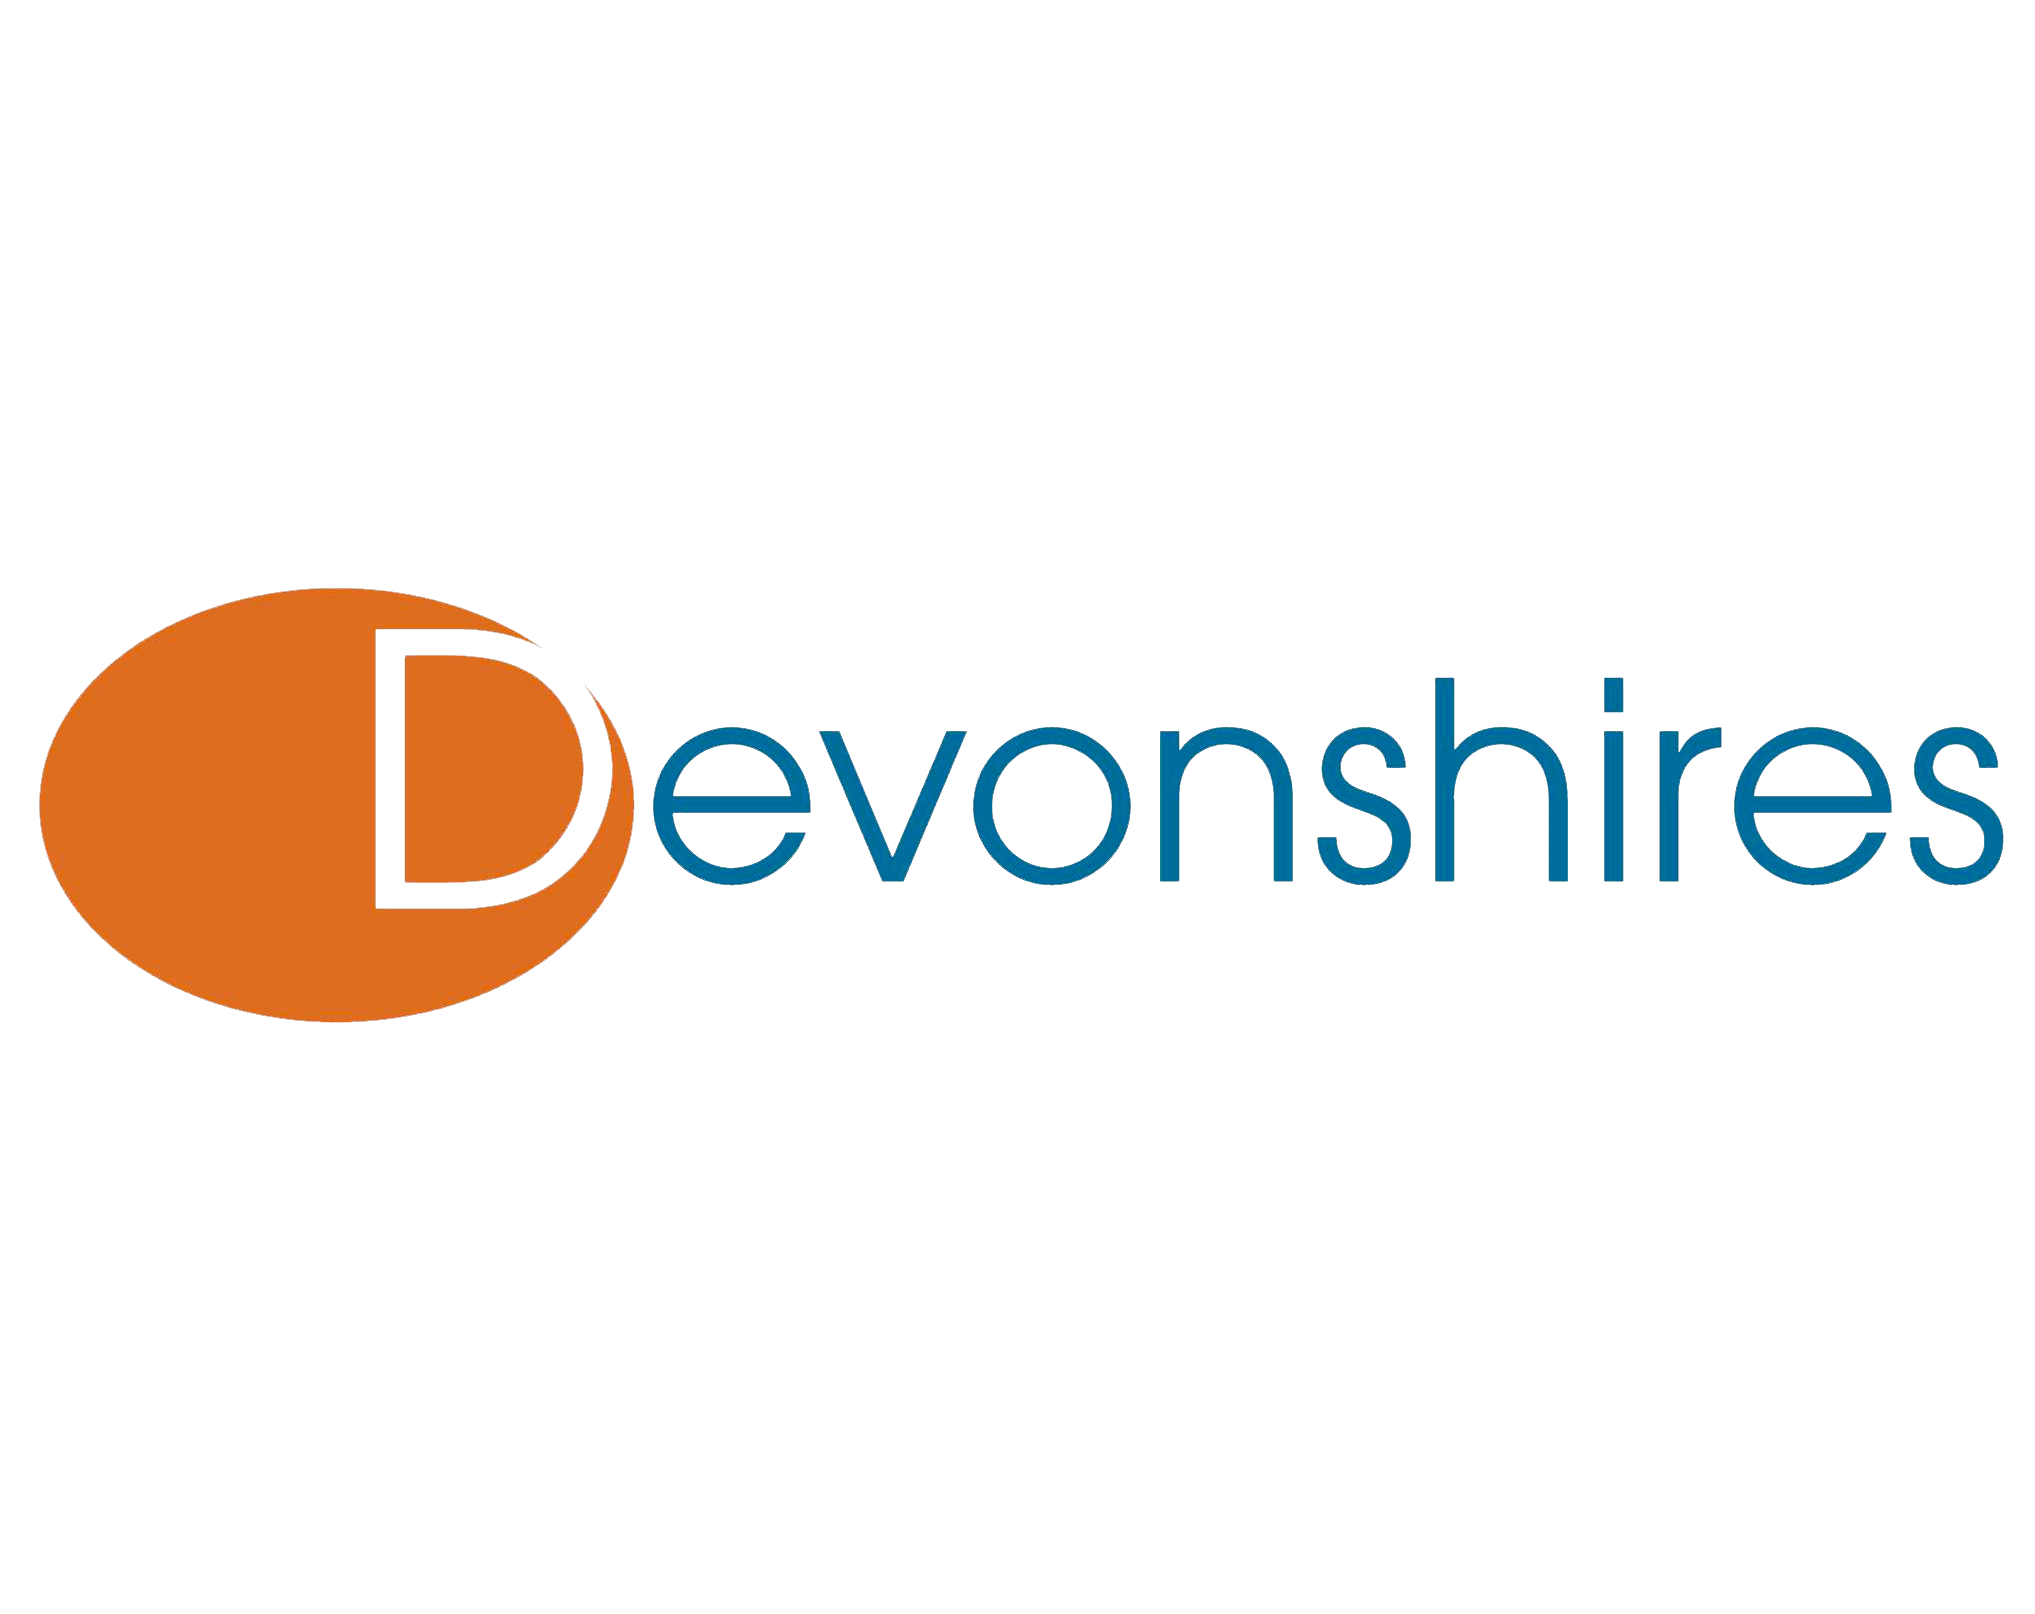 Devonshires logo